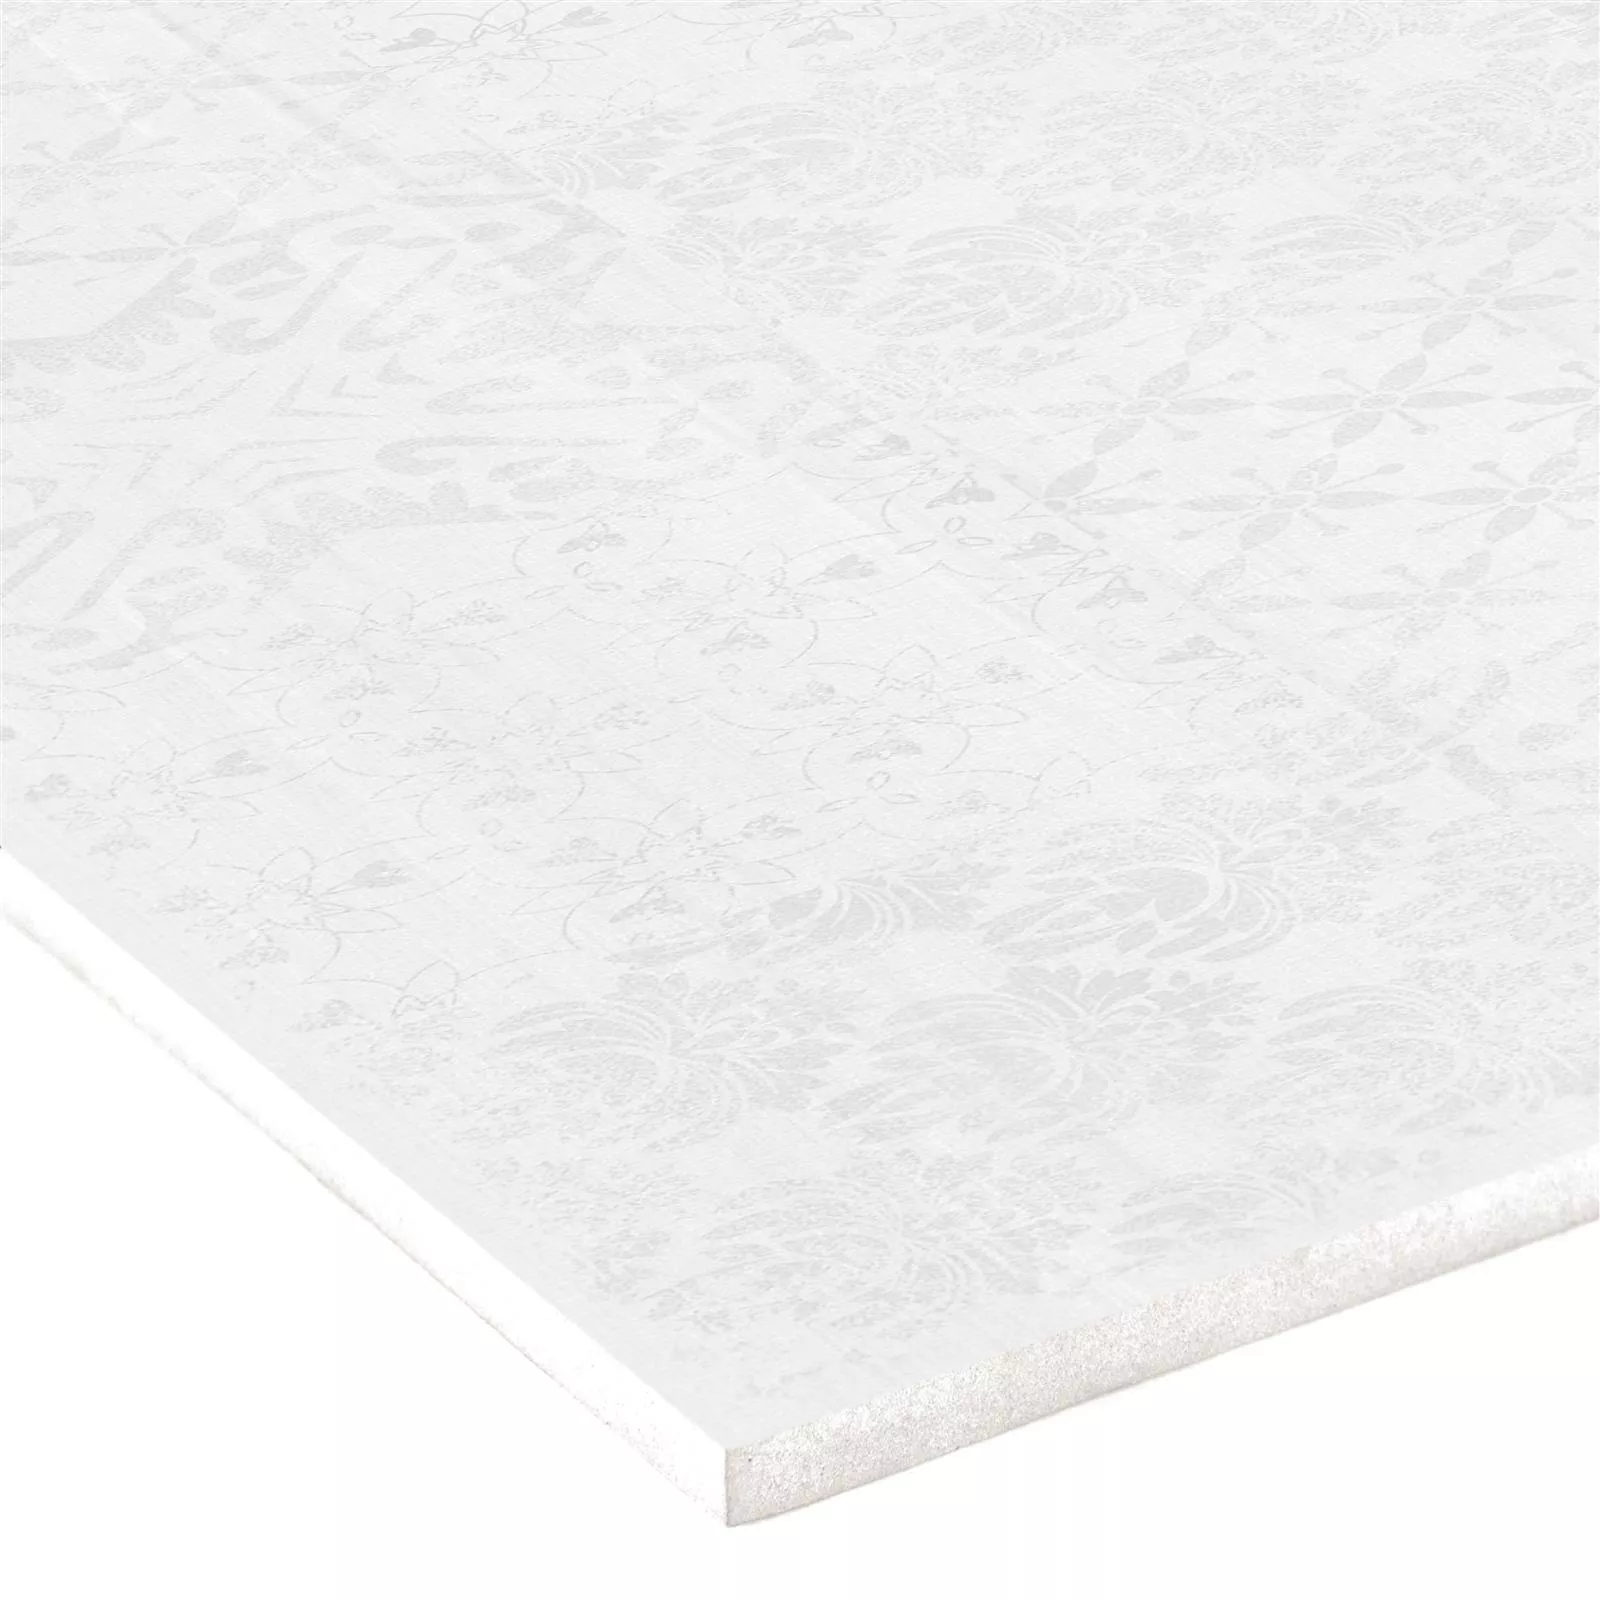 Sample Wall Tiles Abramson 30x60cm Mat White Decor